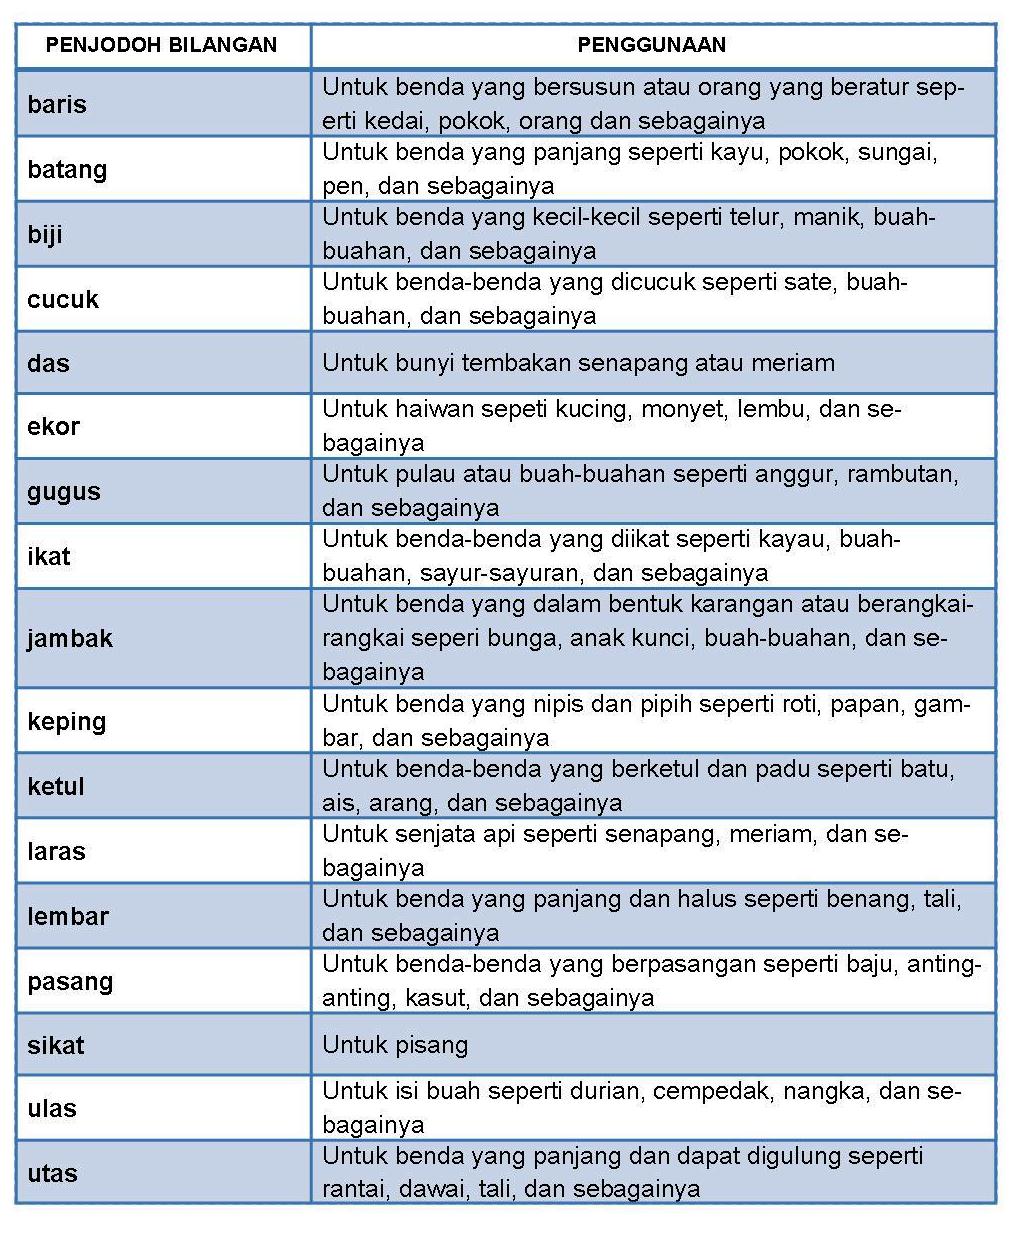 Nota Bahasa Malaysia Penjodoh Bilangan